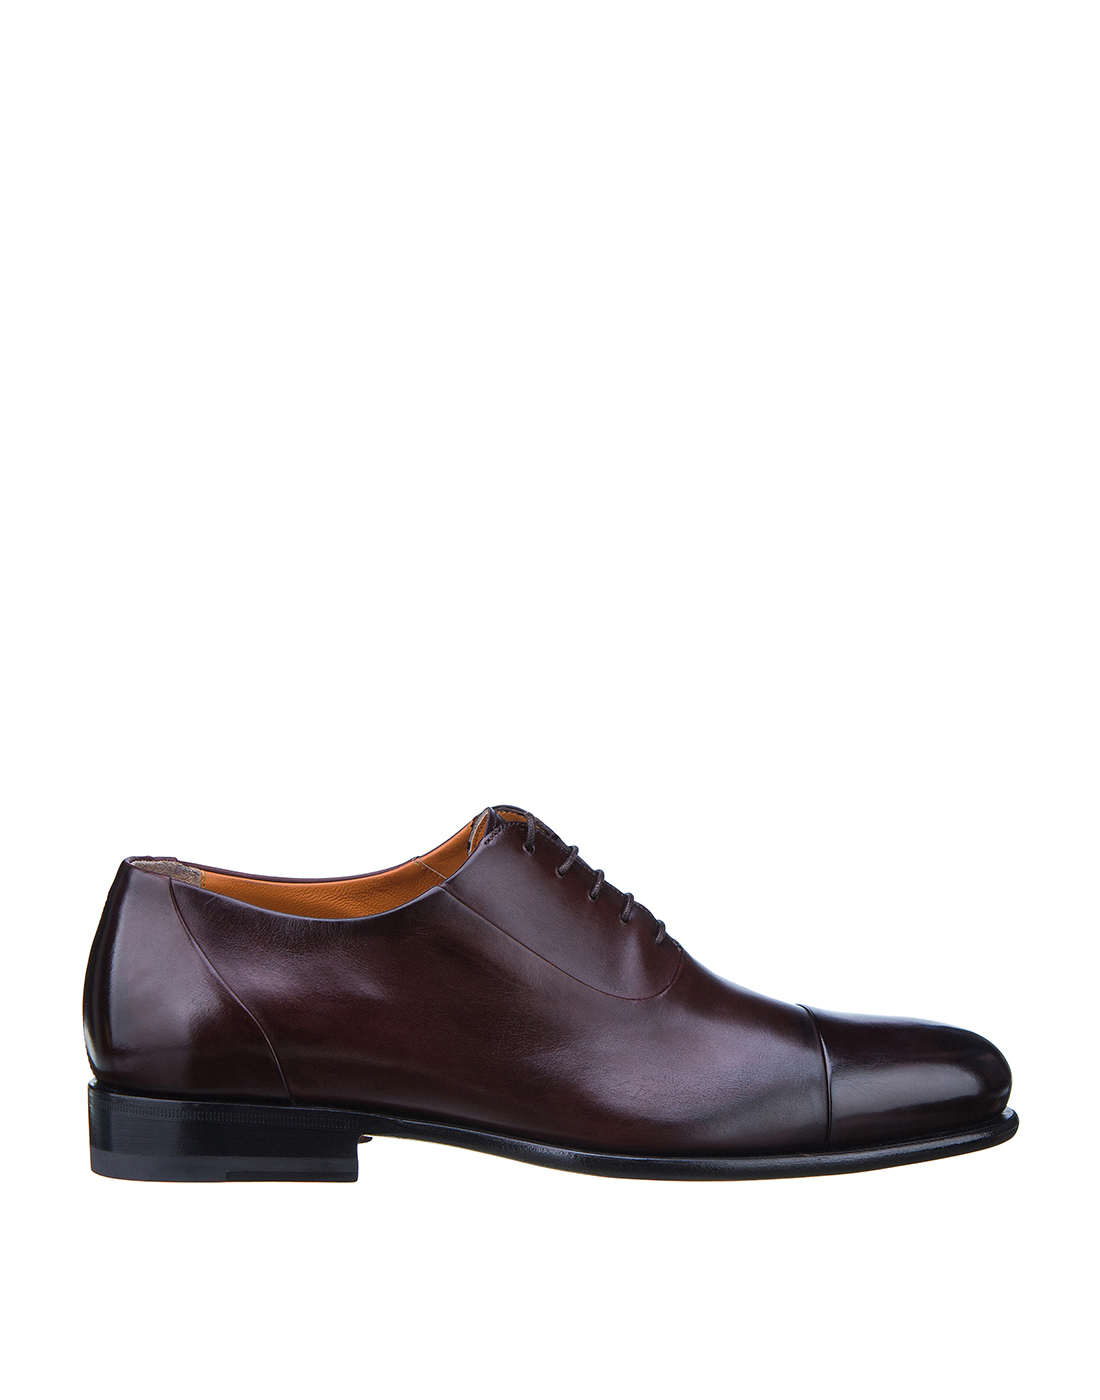 Туфли коричневые мужские Santoni S16436-1